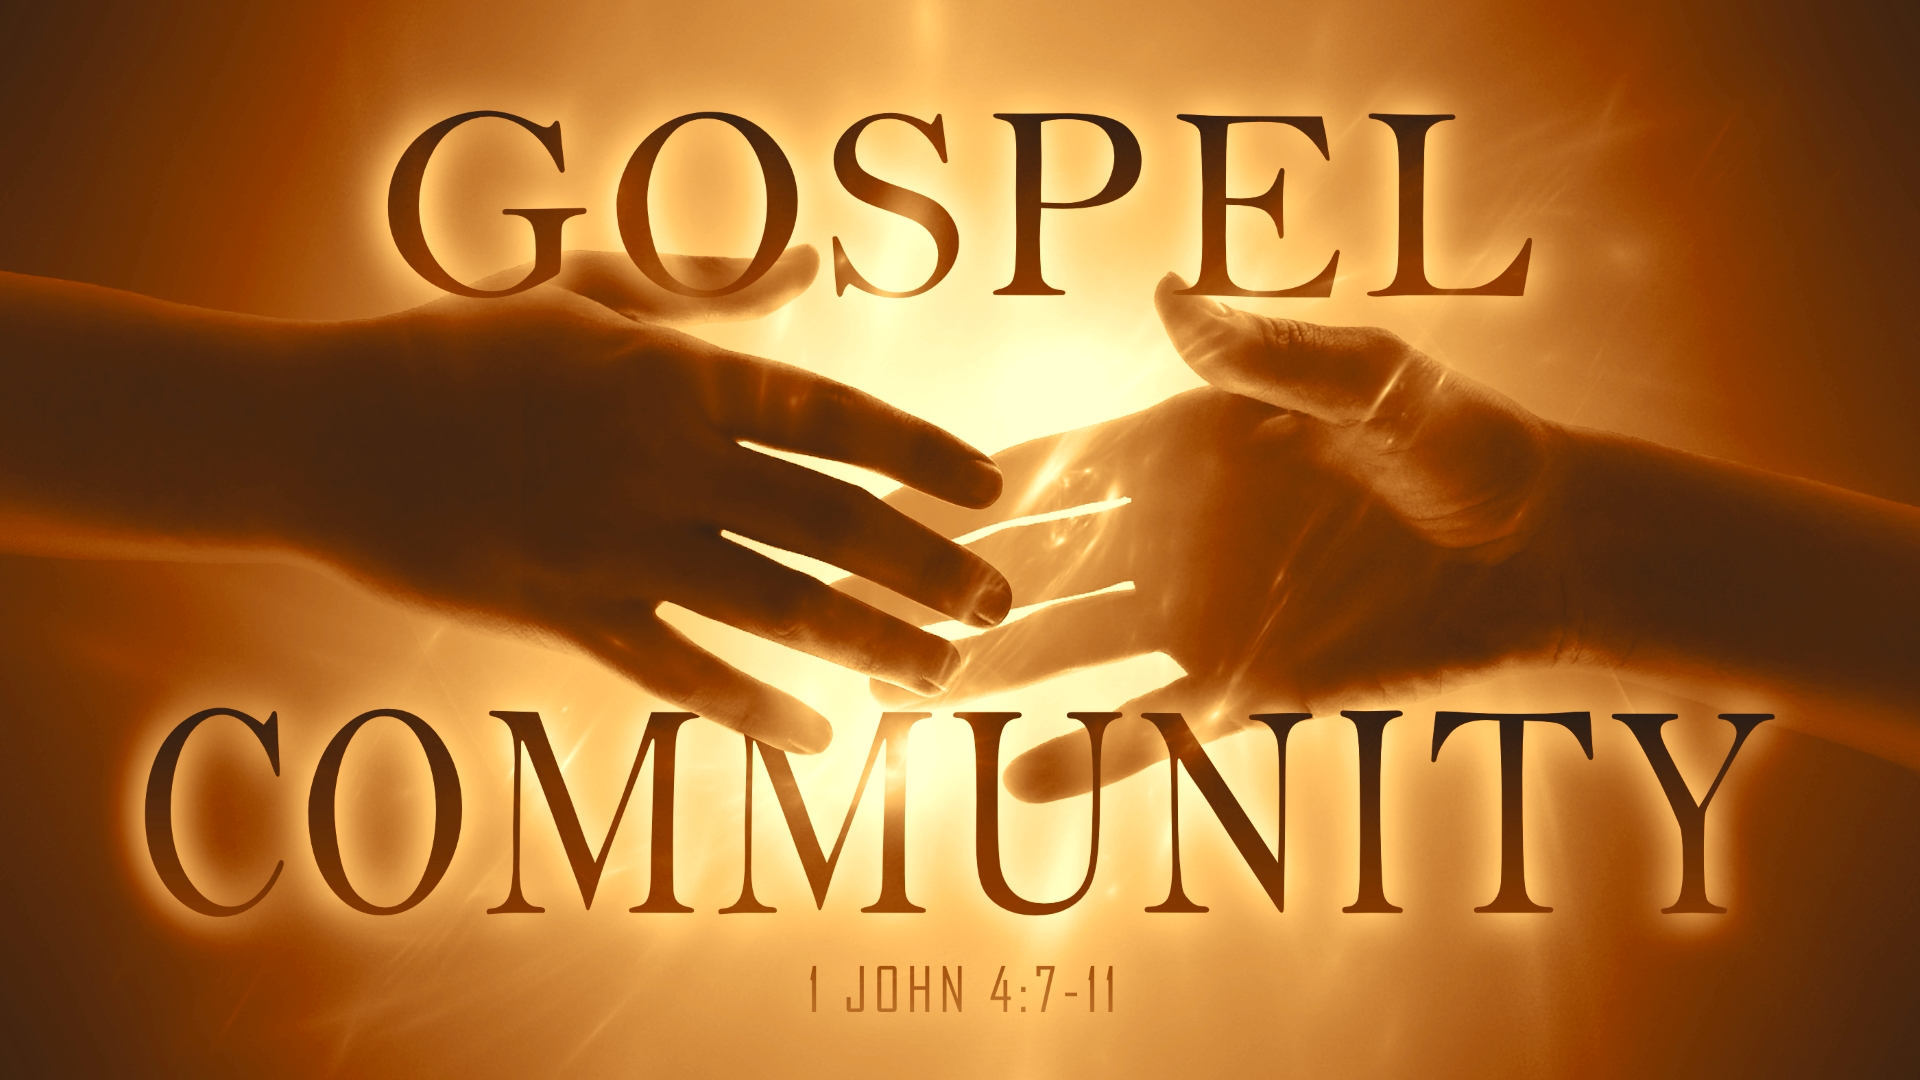 22.3.13a - 1 John 4.7-11 - Gospel Community - Title.001.png